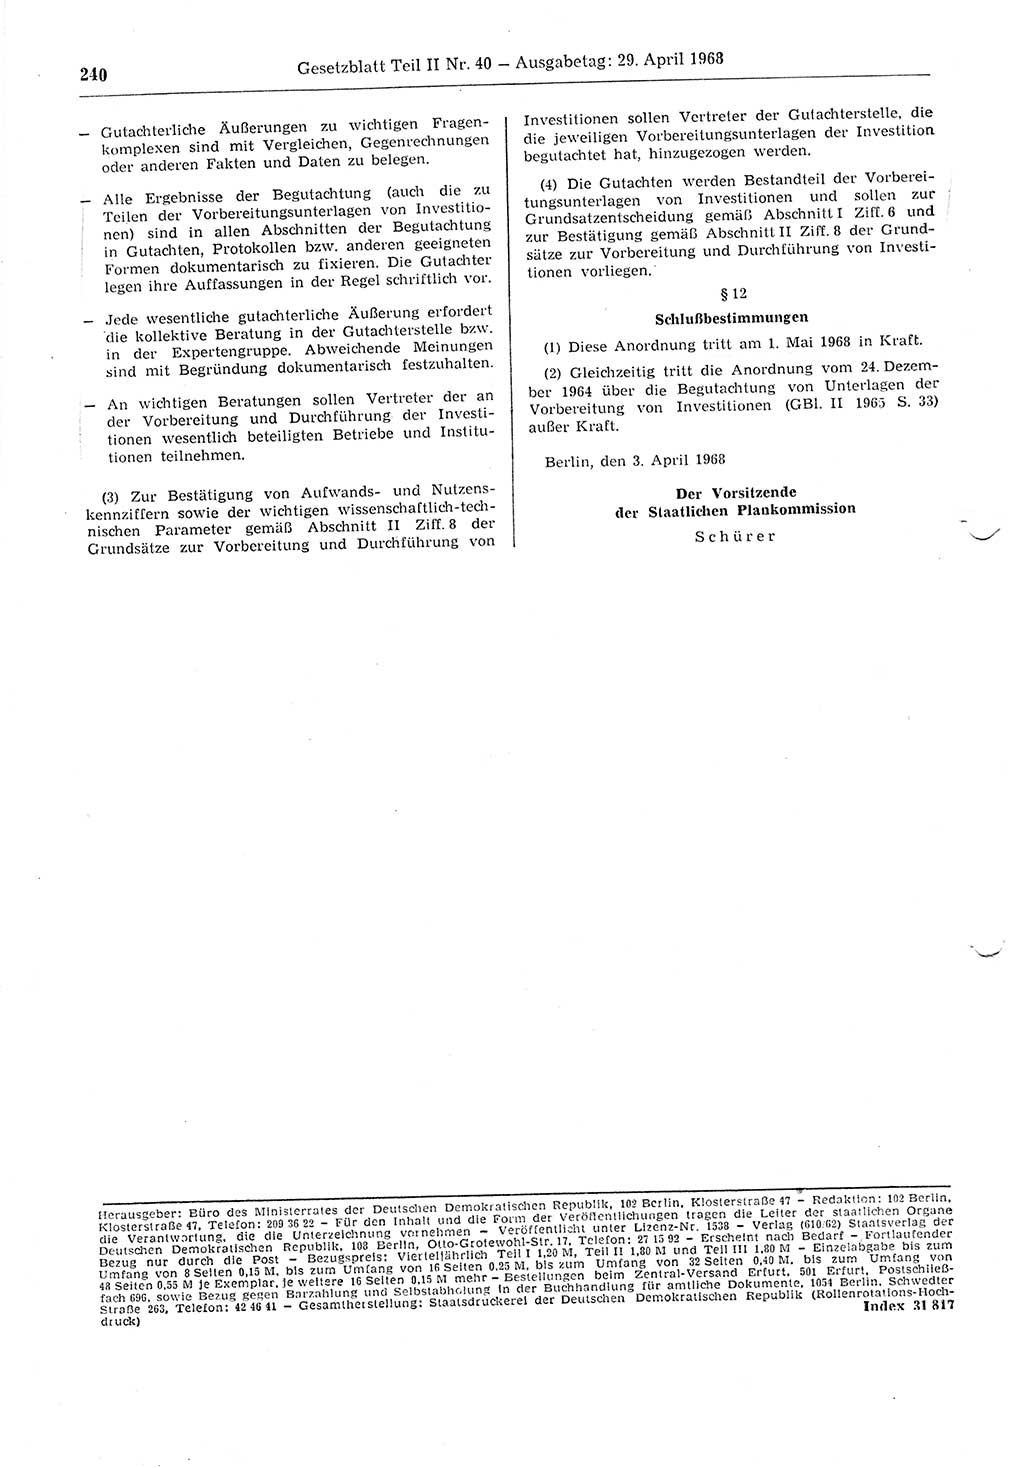 Gesetzblatt (GBl.) der Deutschen Demokratischen Republik (DDR) Teil ⅠⅠ 1968, Seite 240 (GBl. DDR ⅠⅠ 1968, S. 240)